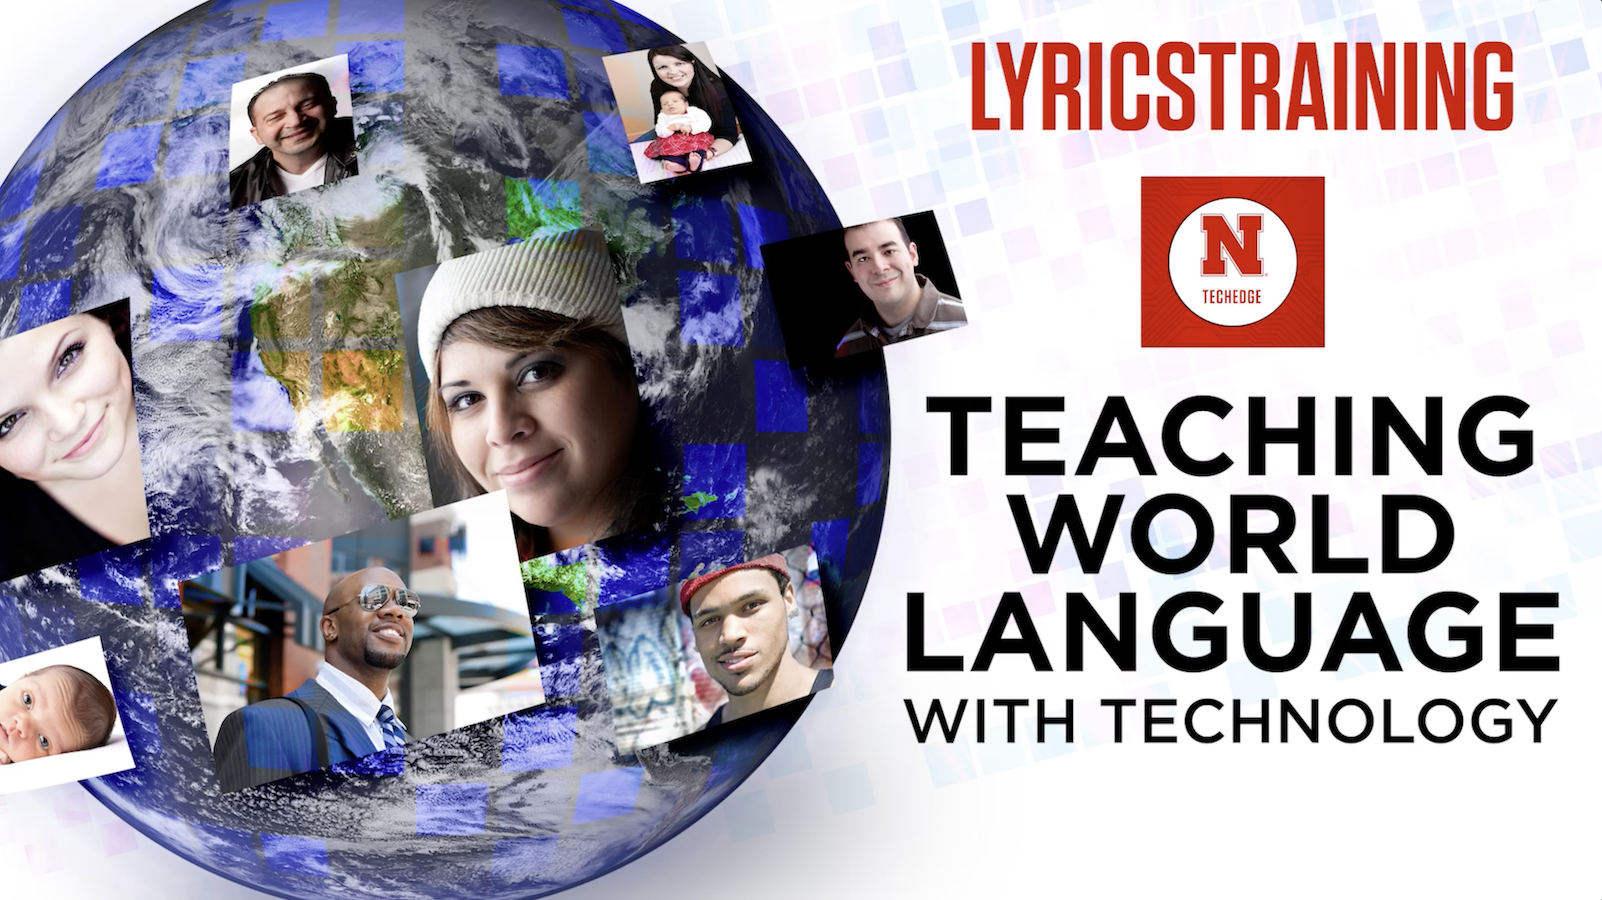 Tech EDGE - Teaching World Language with Technology: lyricstraining